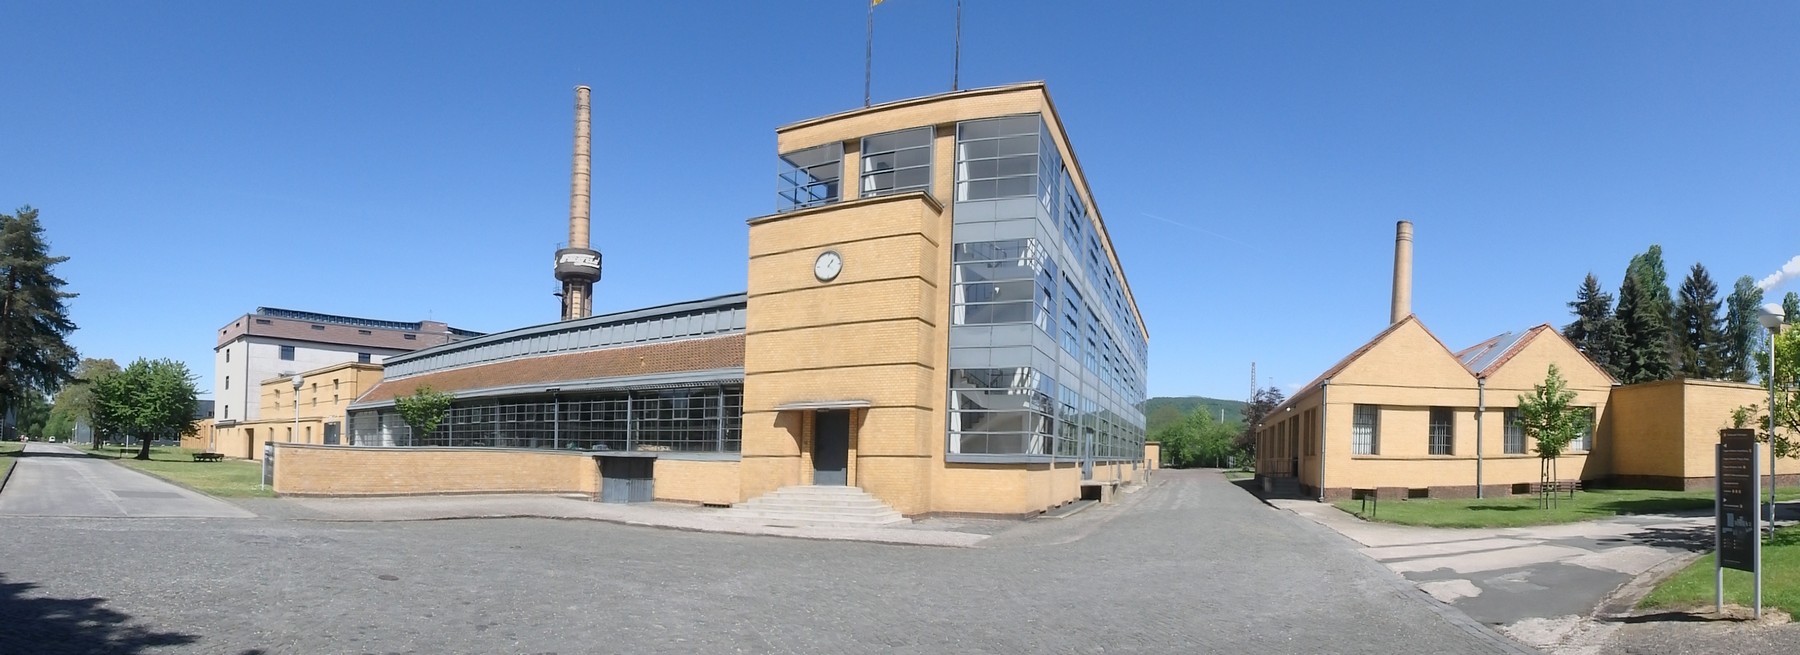 P5030007 Pano fábrica de Fagues en Alfeld Unesco Alemania